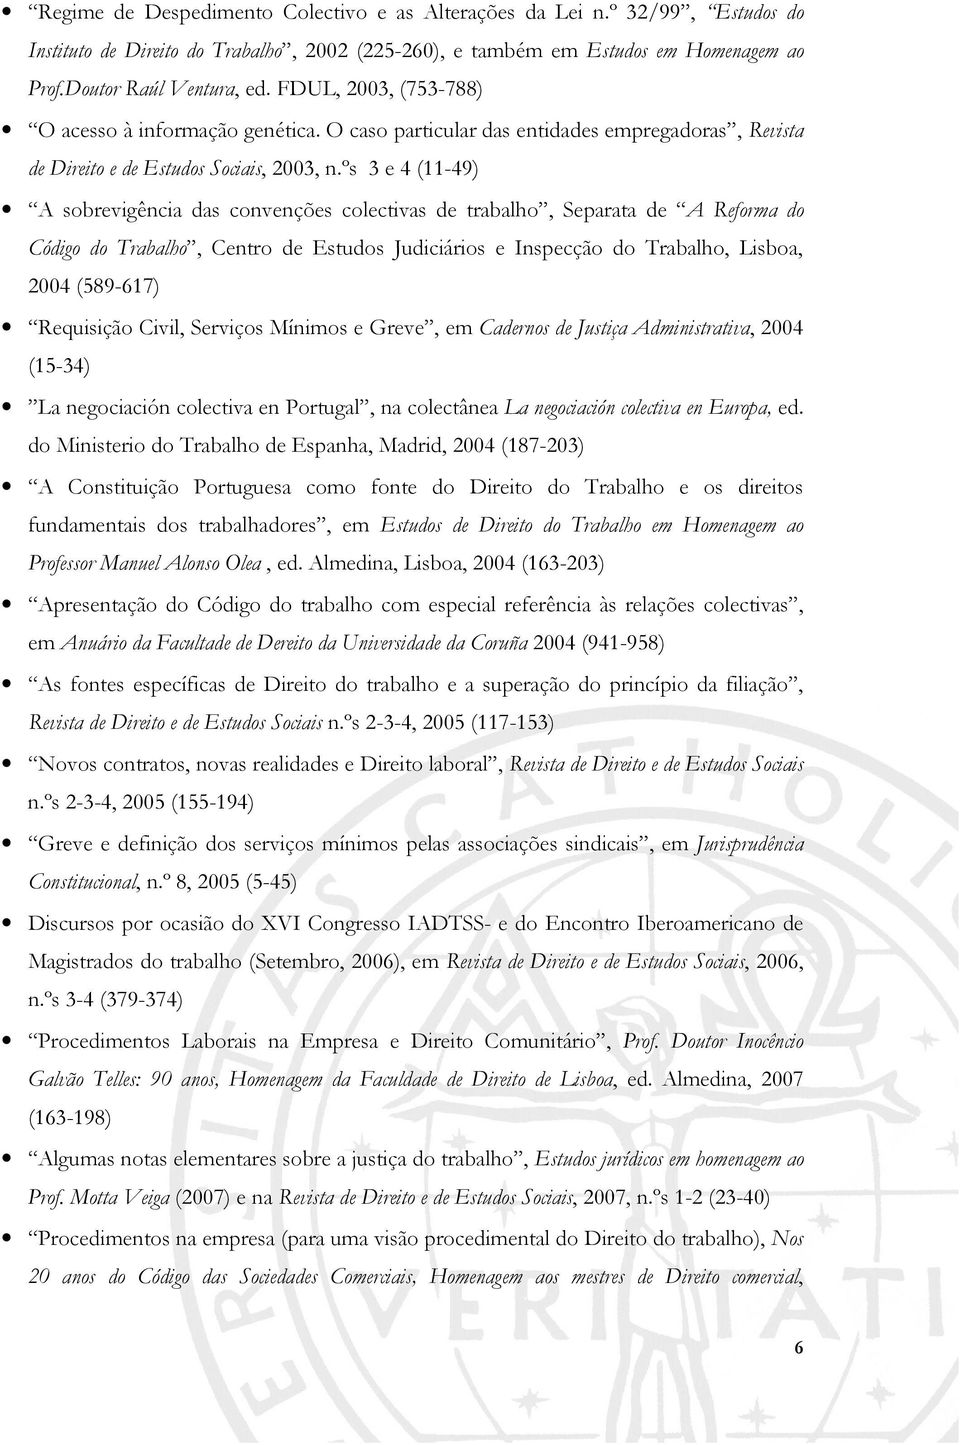 ºs 3 e 4 (11-49) A sobrevigência das convenções colectivas de trabalho, Separata de A Reforma do Código do Trabalho, Centro de Estudos Judiciários e Inspecção do Trabalho, Lisboa, 2004 (589-617)